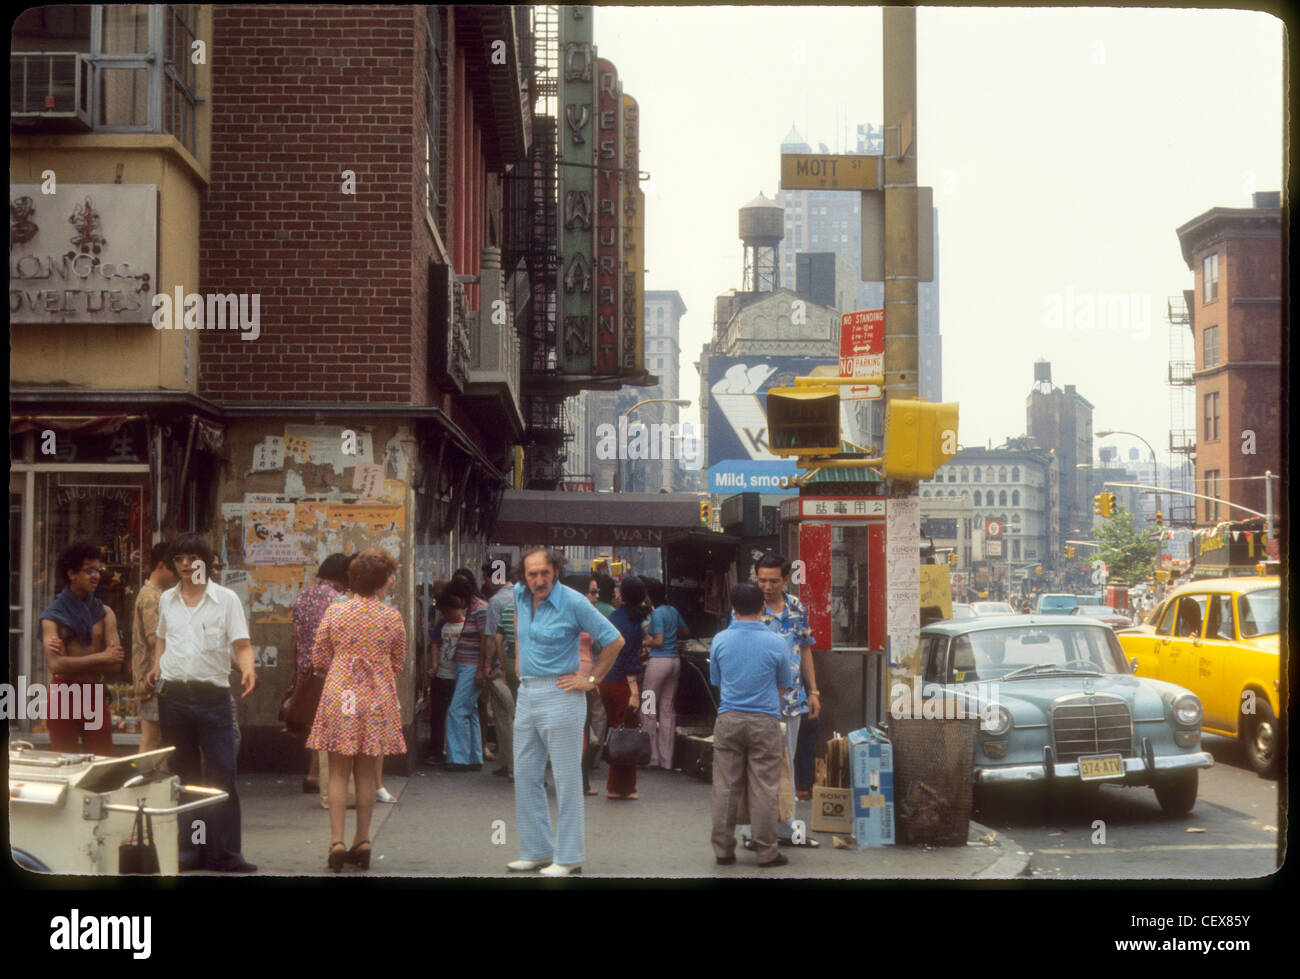 L'uomo fissava con fotografo su Mott Street in China town durante 1974 New York City Guerra del Vietnam era affollata Manhattan street Foto Stock